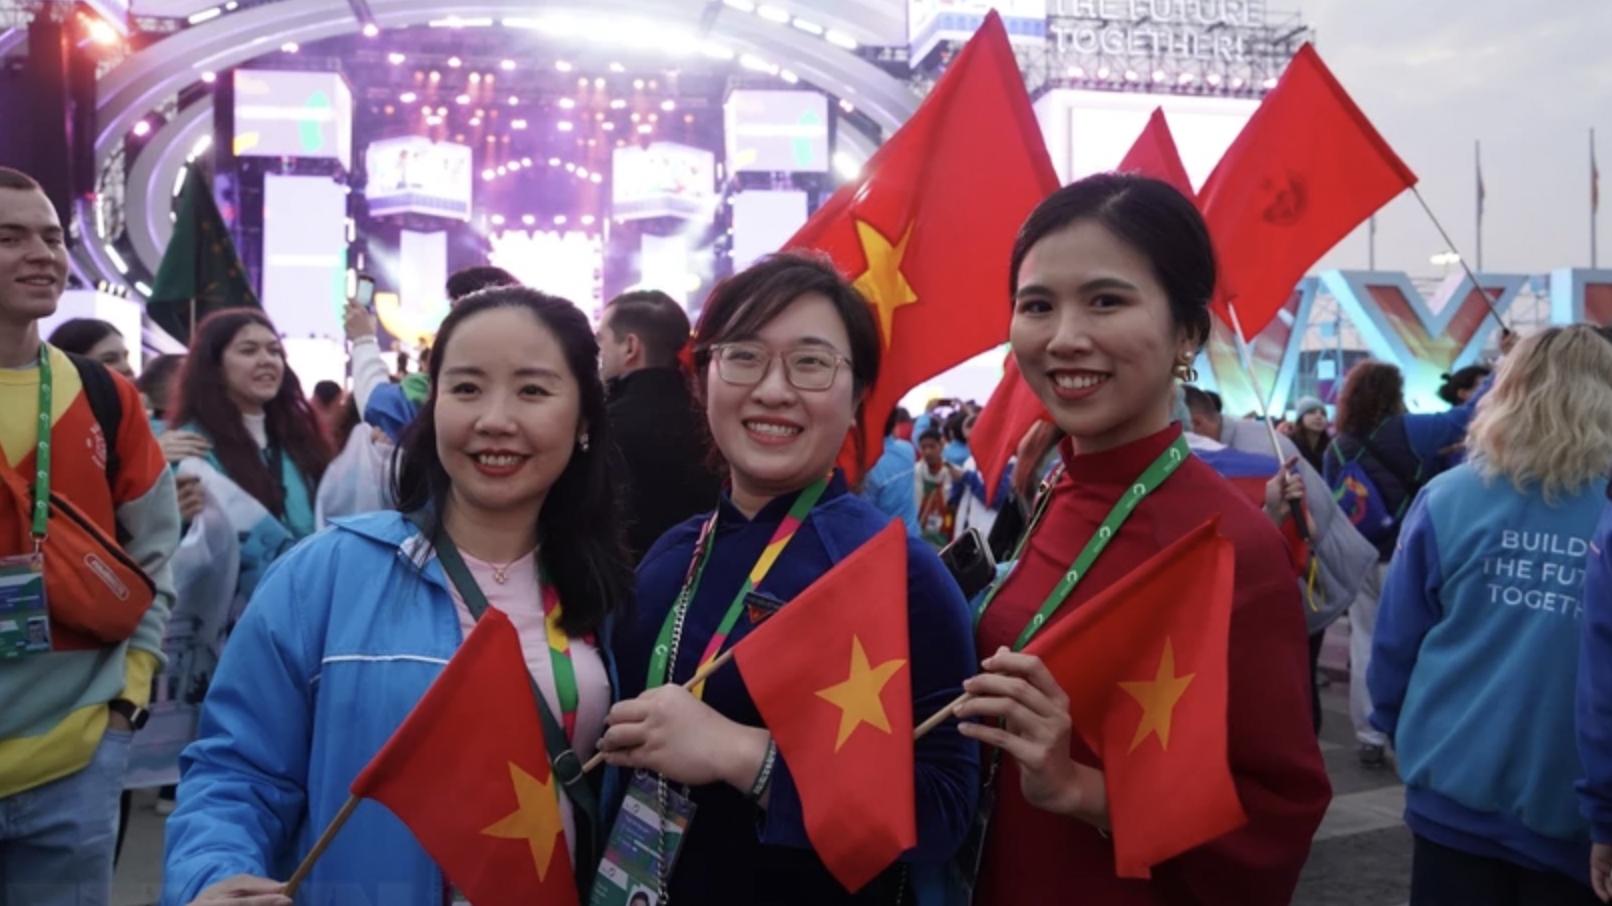 越南在2024年世界青年节上加强与各国的友谊